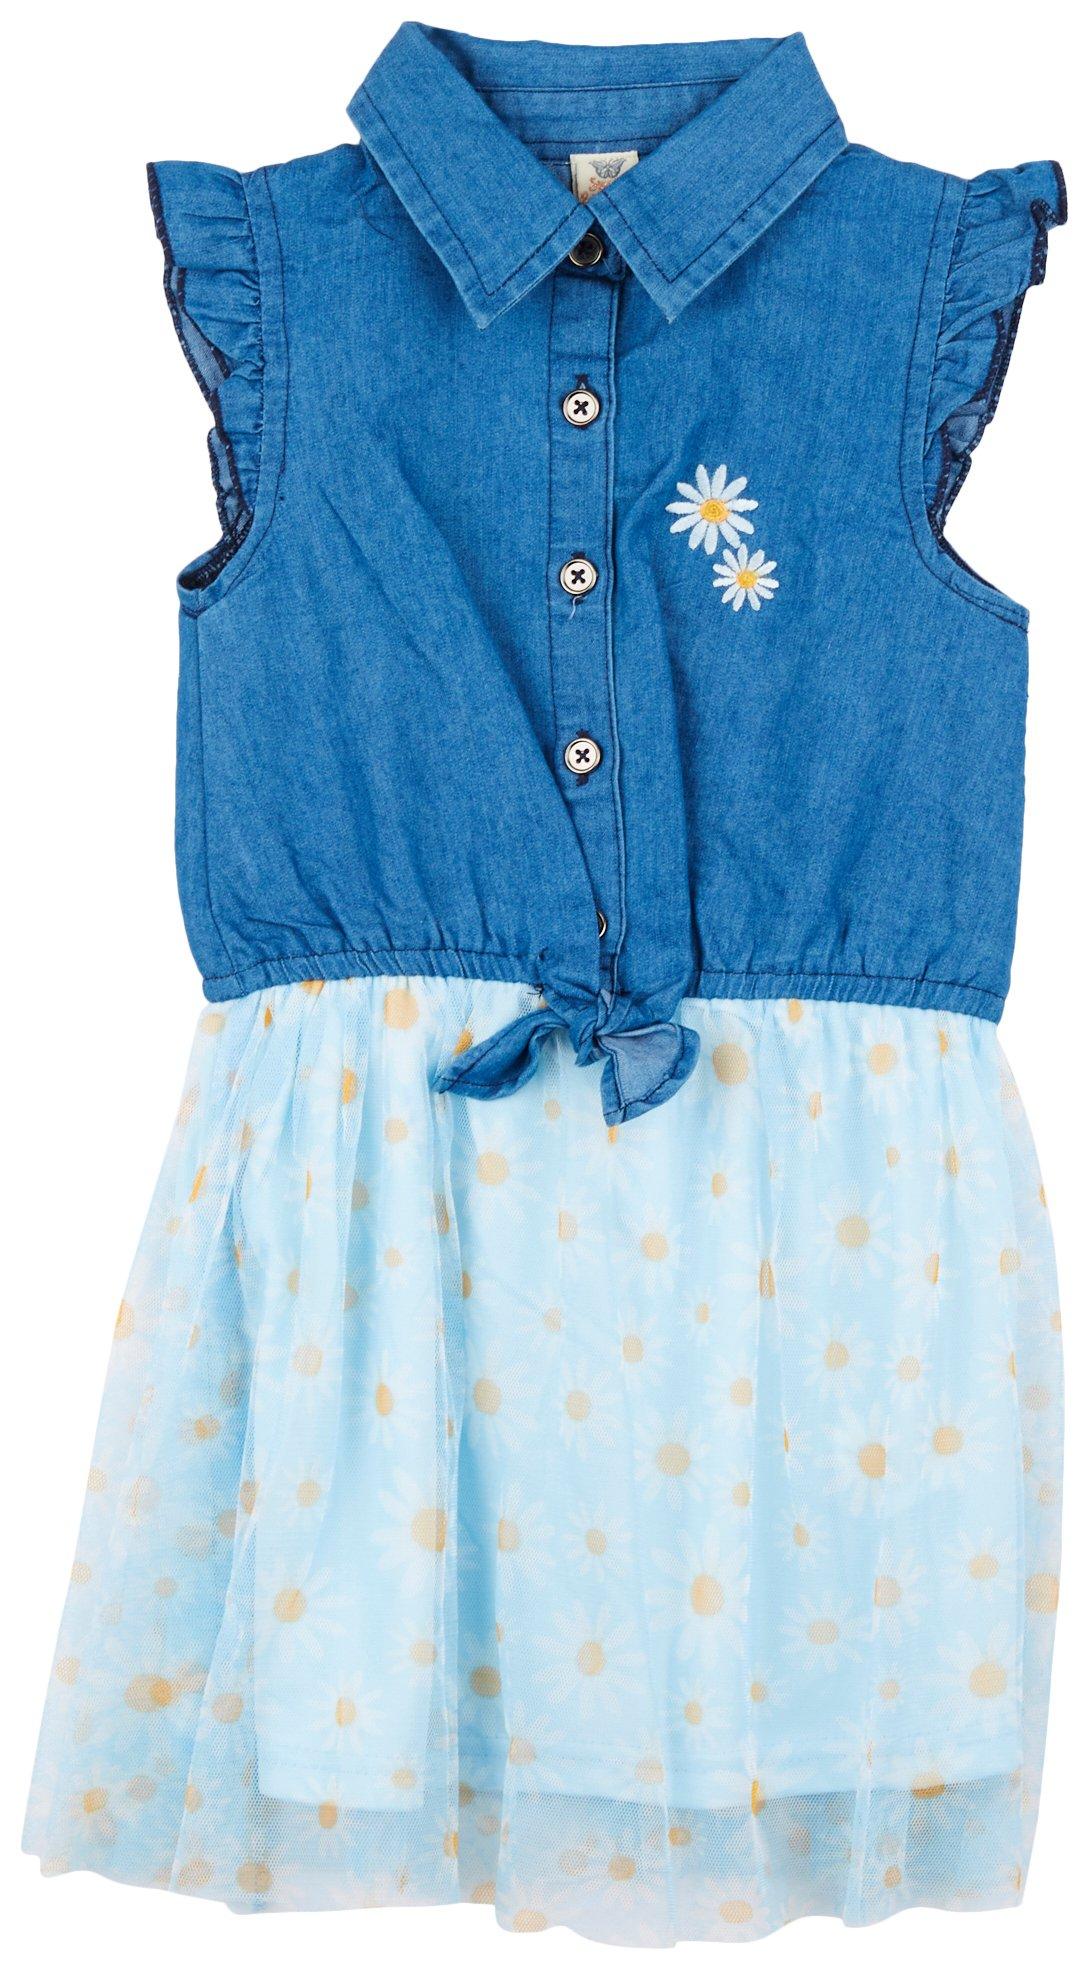 Toddler Girls Daisy Denim & Tulle Dress